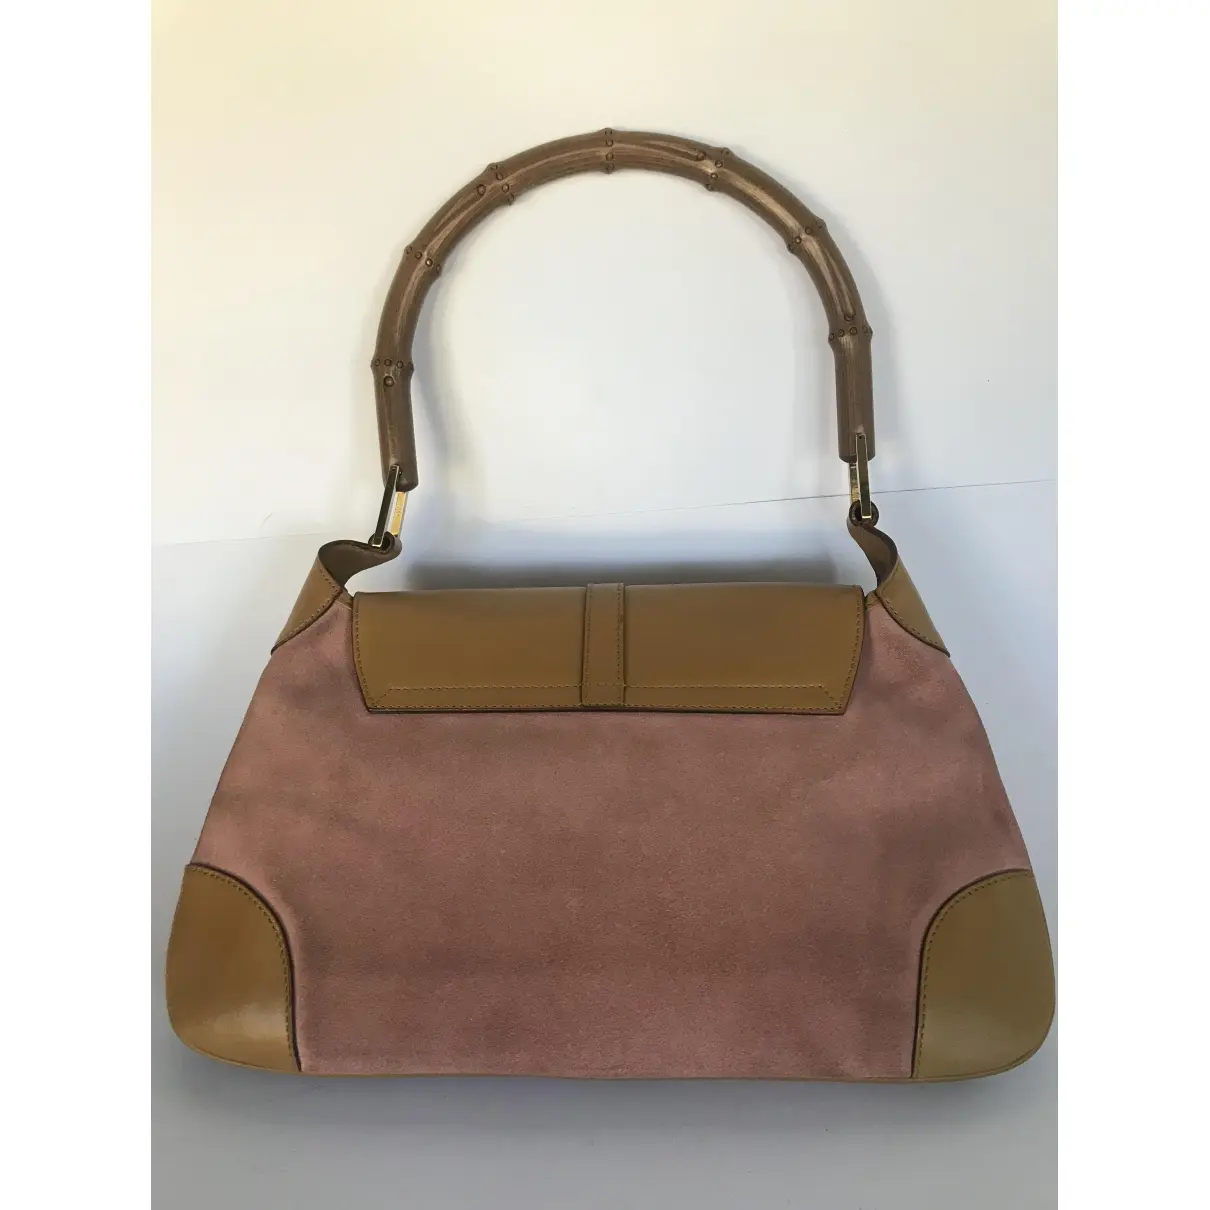 Gucci Jackie Vintage  handbag for sale - Vintage